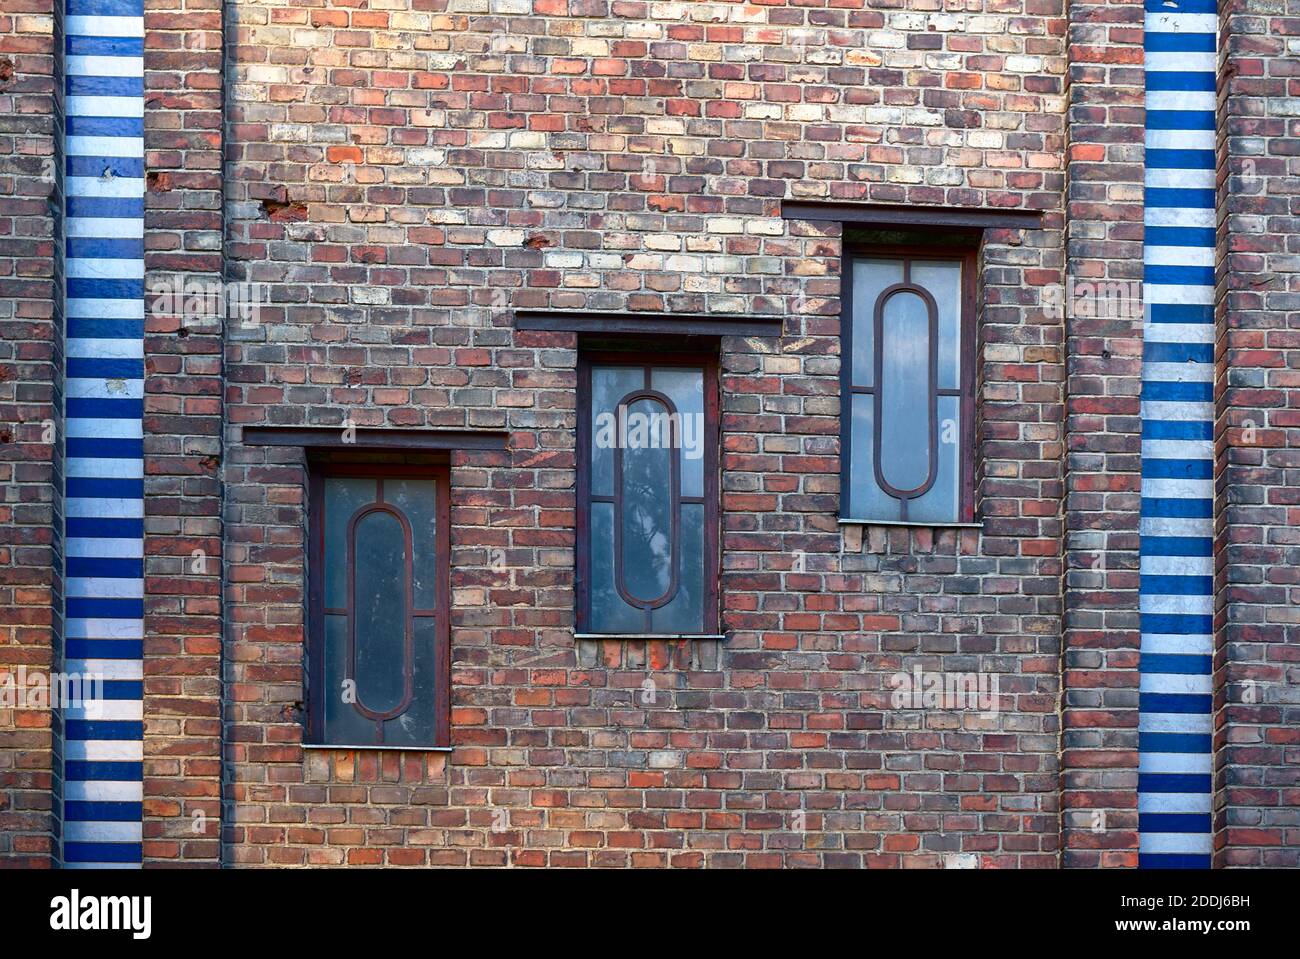 drei Fenster eines Ziegelbau/Backsteinbau's mit farbiger Umrandung Stock Photo